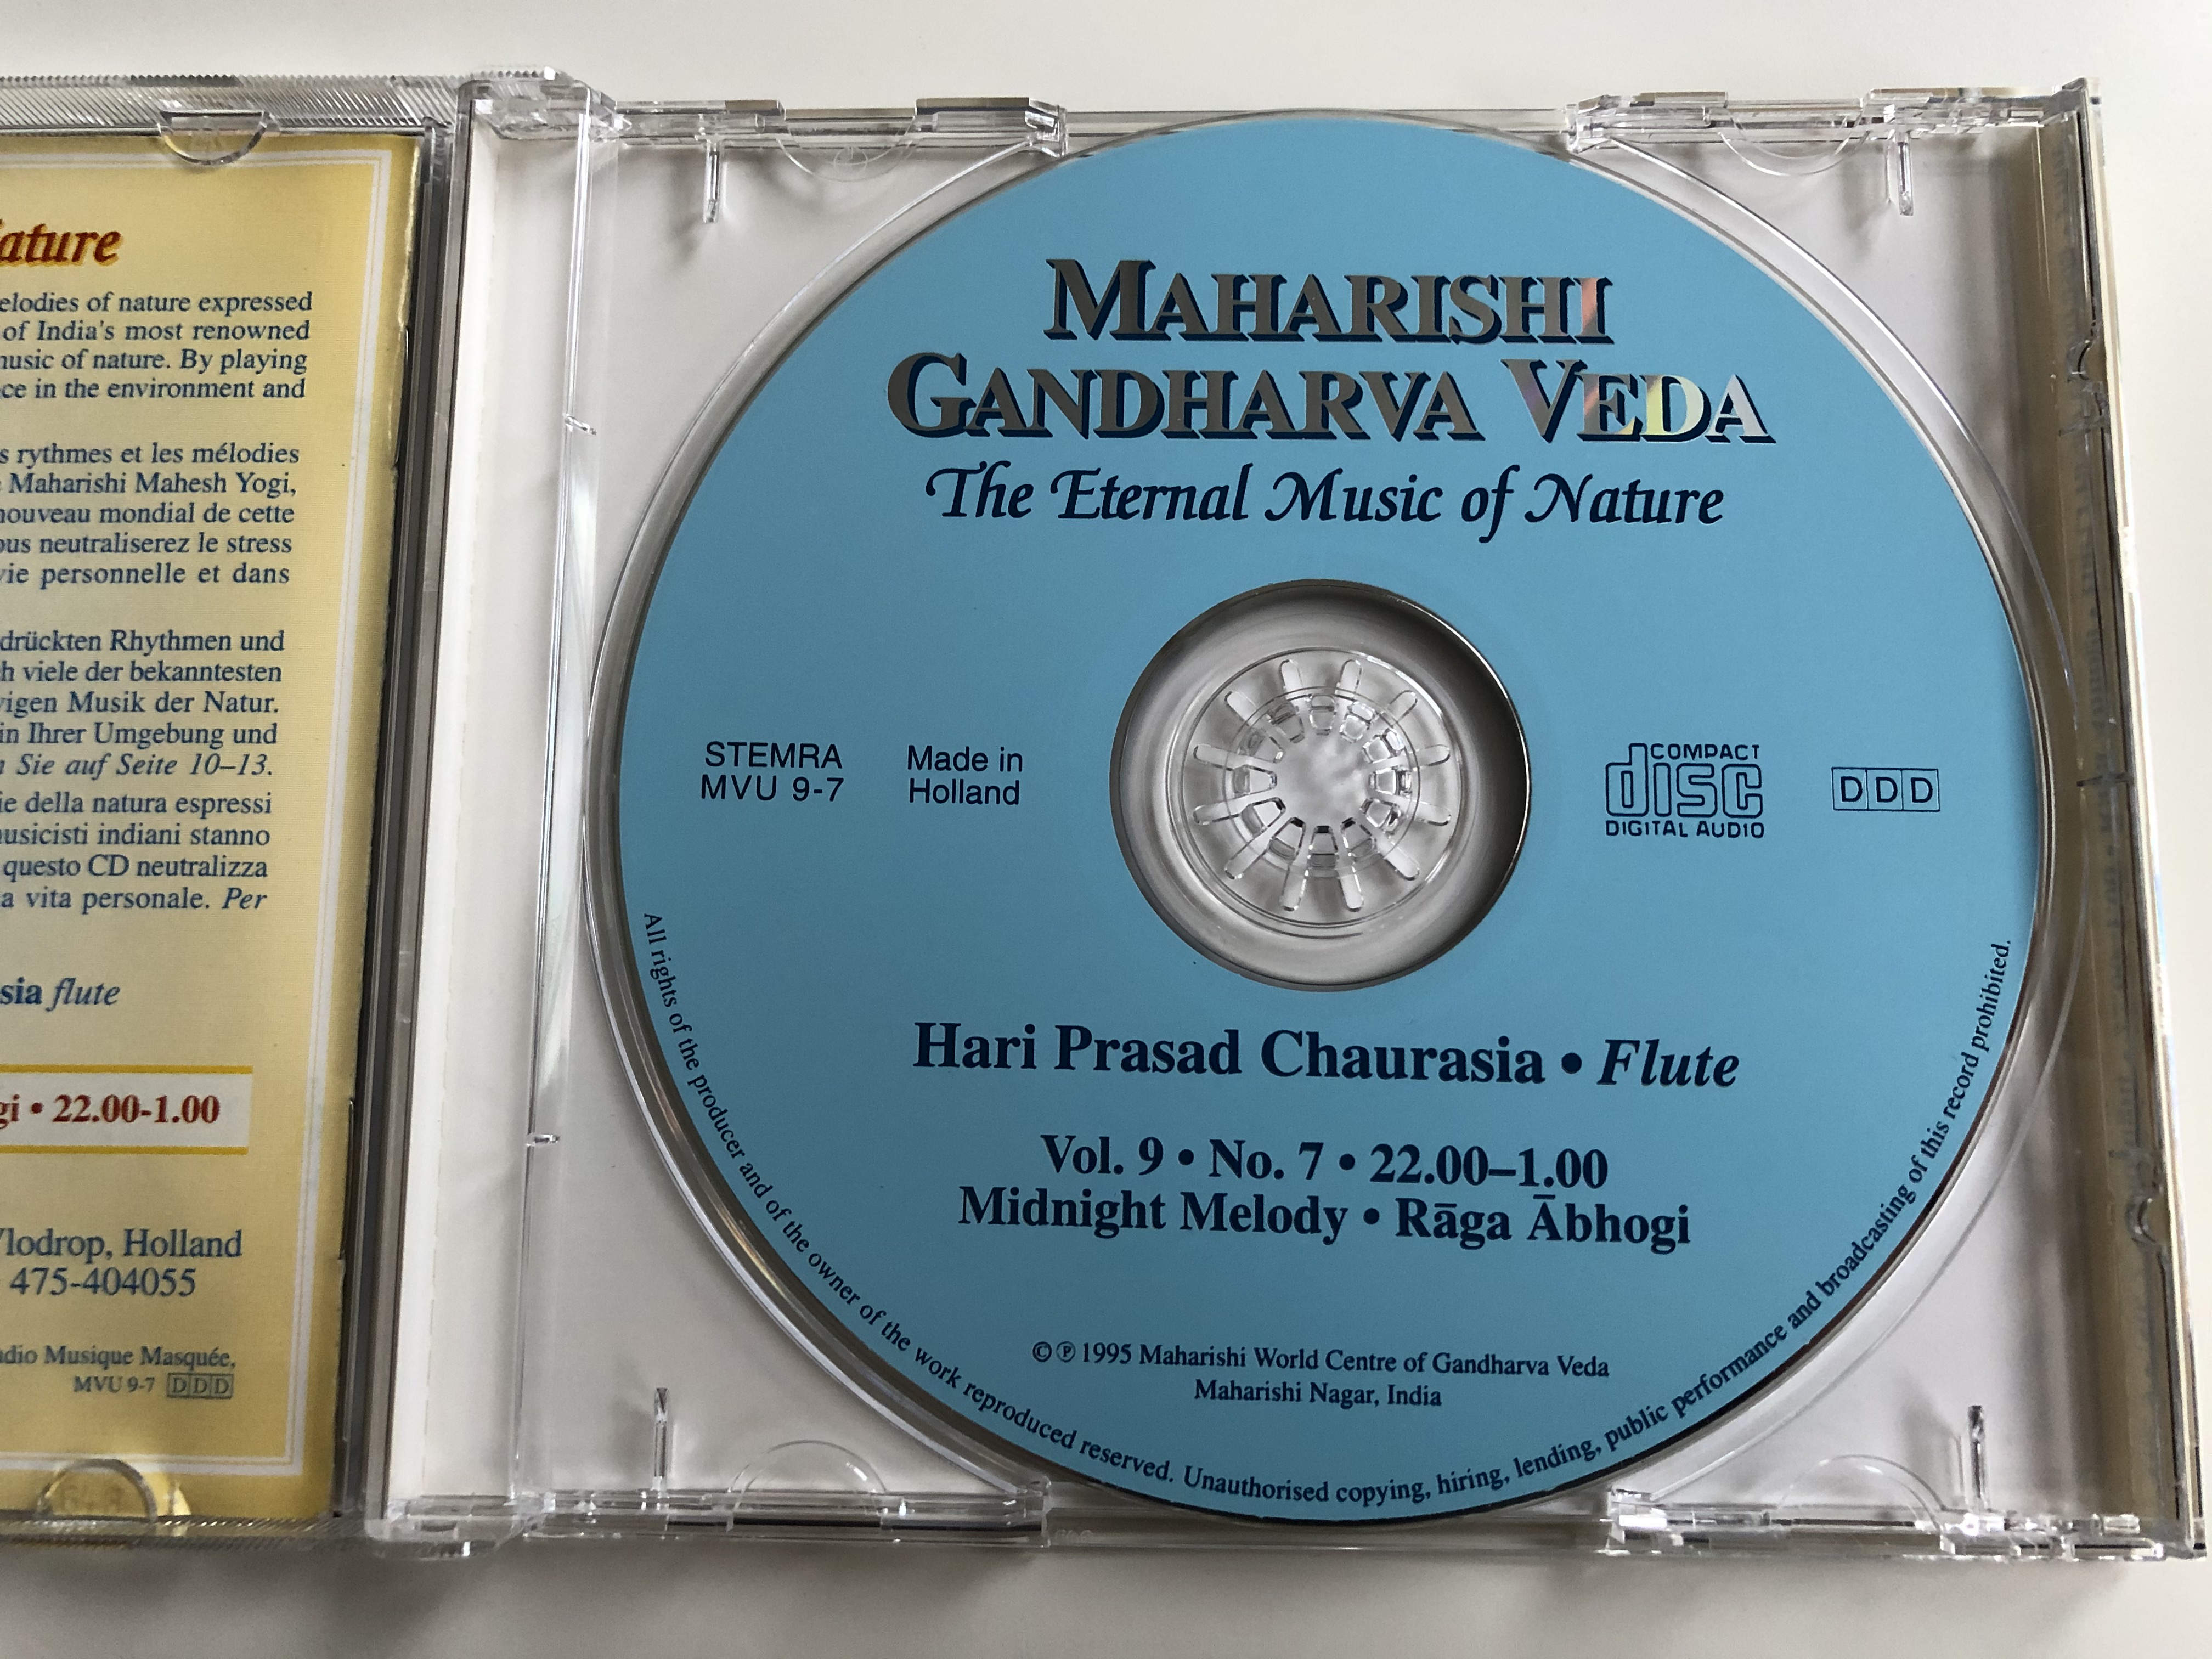 maharishi-gandharva-veda-the-eternal-music-of-nature-hari-prasad-chaurasia-midnight-melody-maharishi-world-centre-of-gandharva-veda-audio-cd-1995-mvu-9-7-5-.jpg